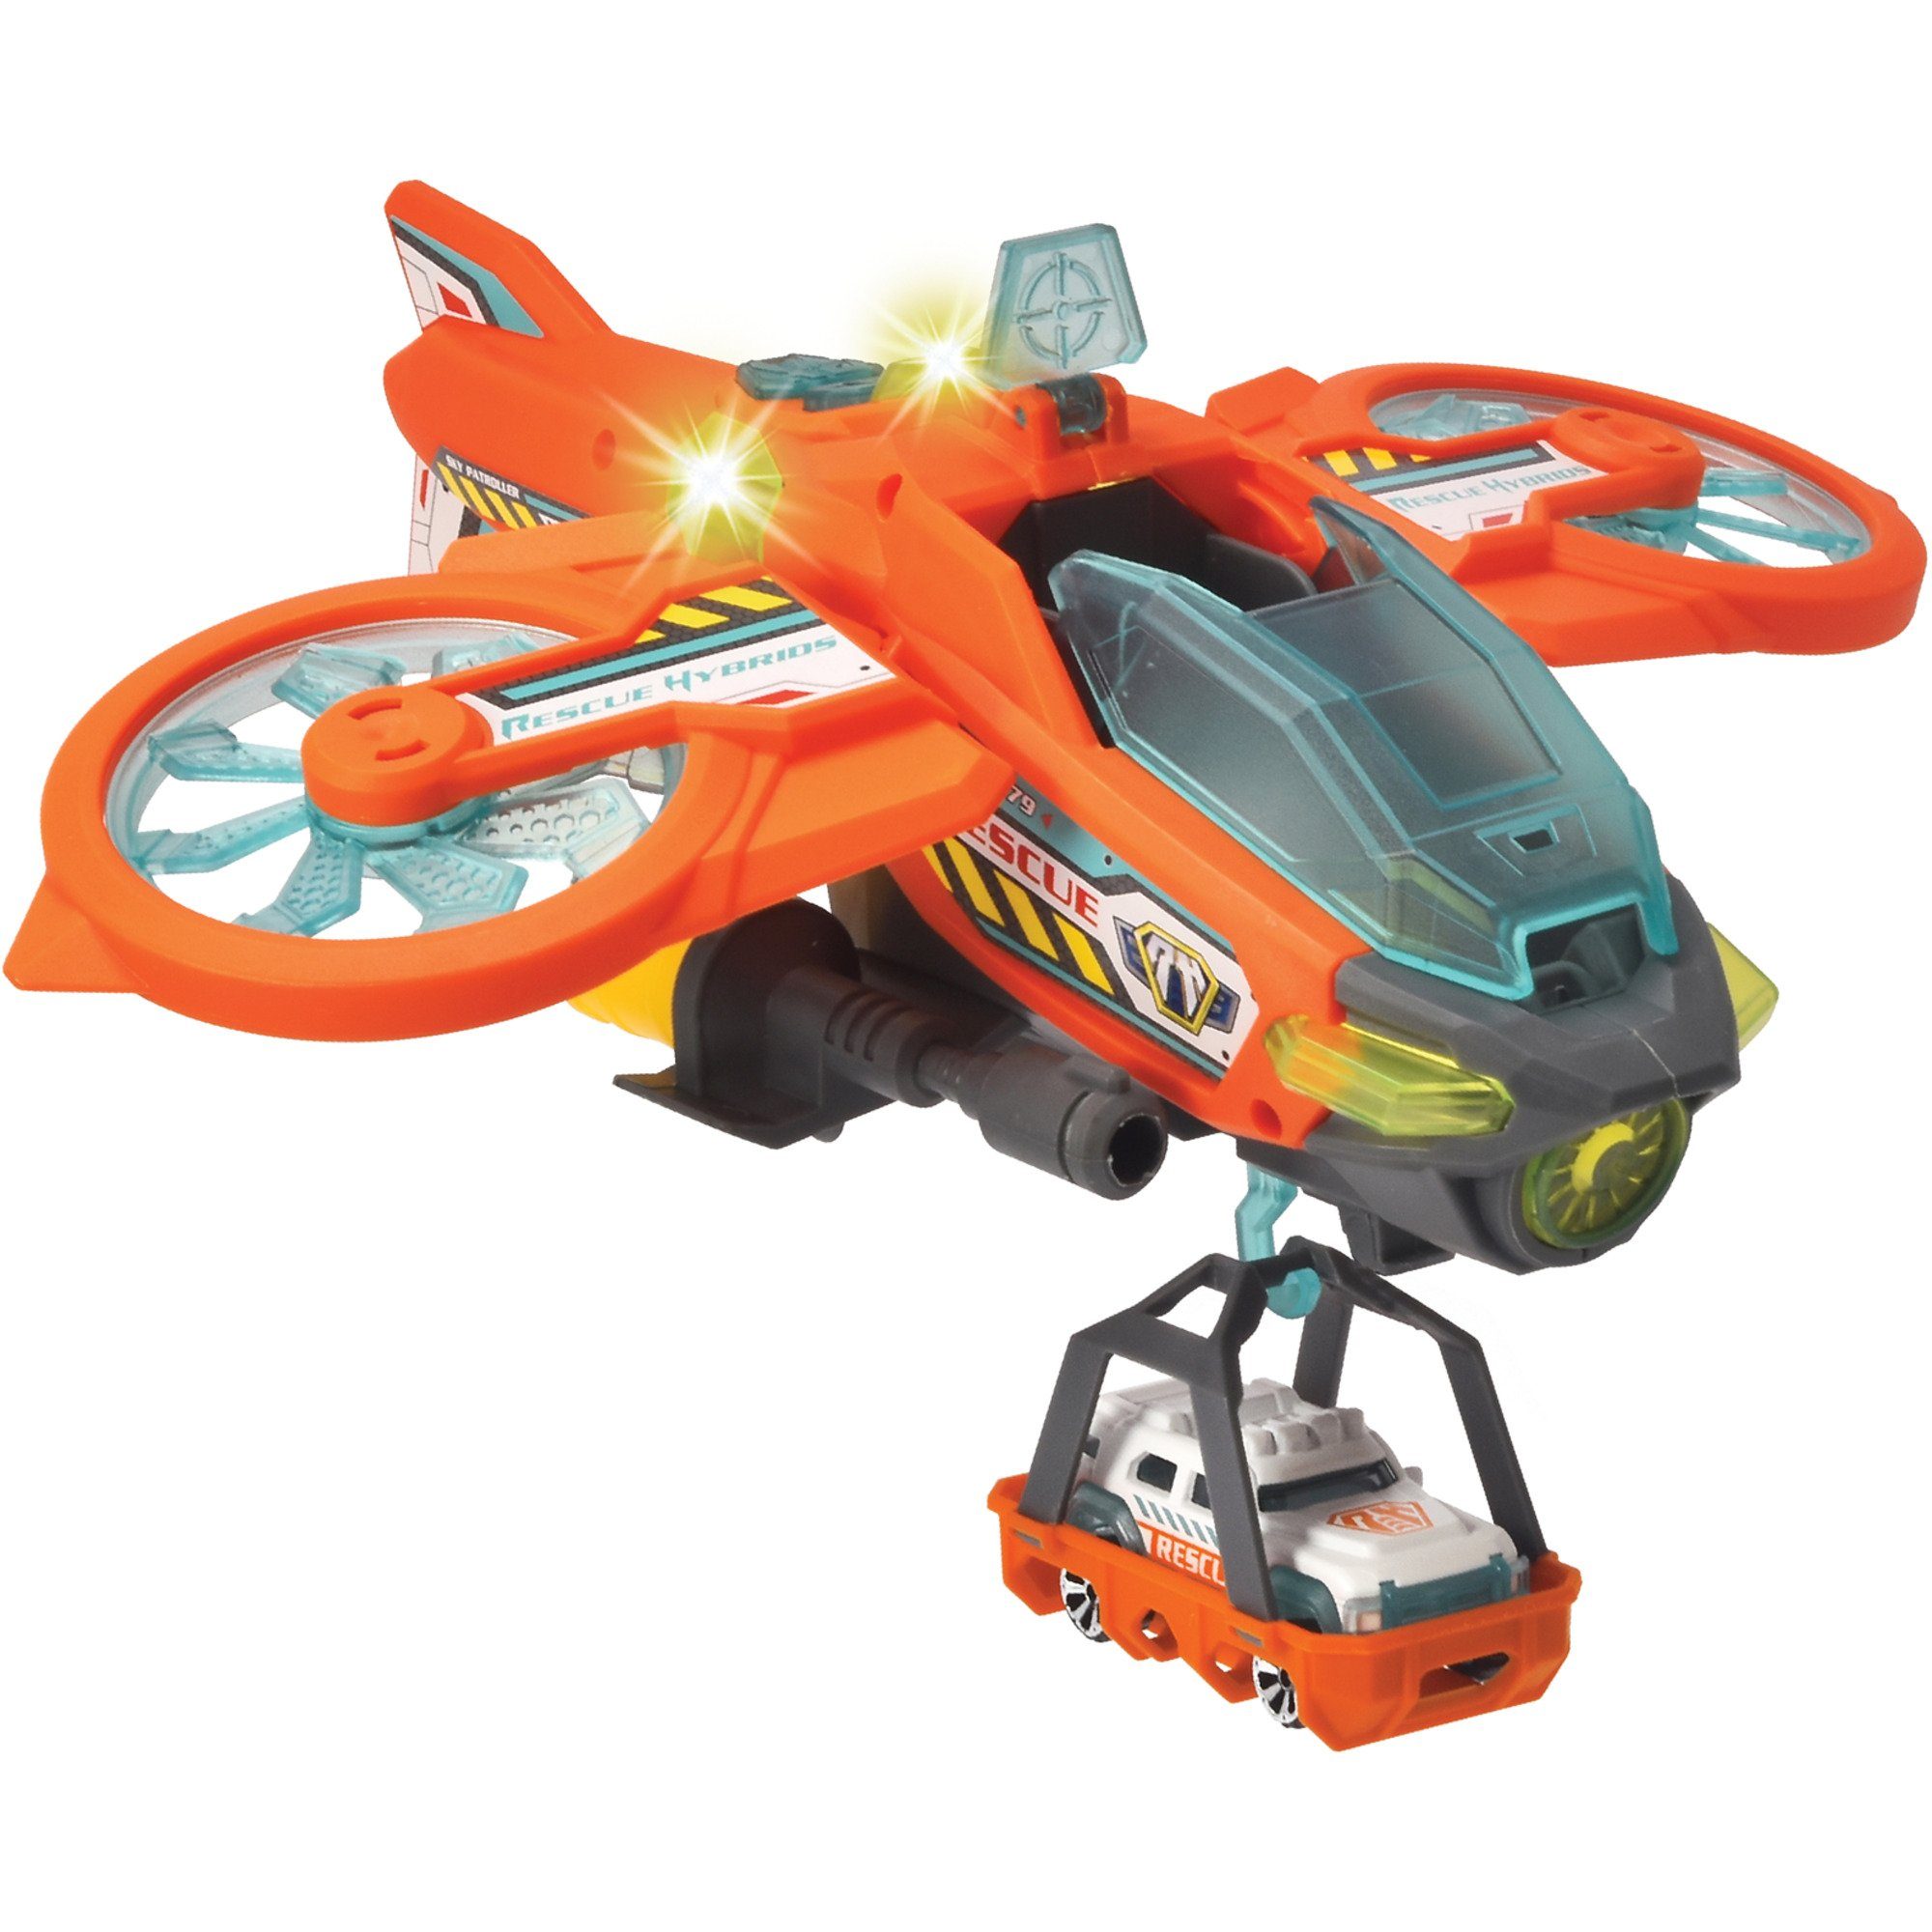 Patroller, Sky Toys Spielzeug-Auto Dickie Spielfahrzeug Dickie